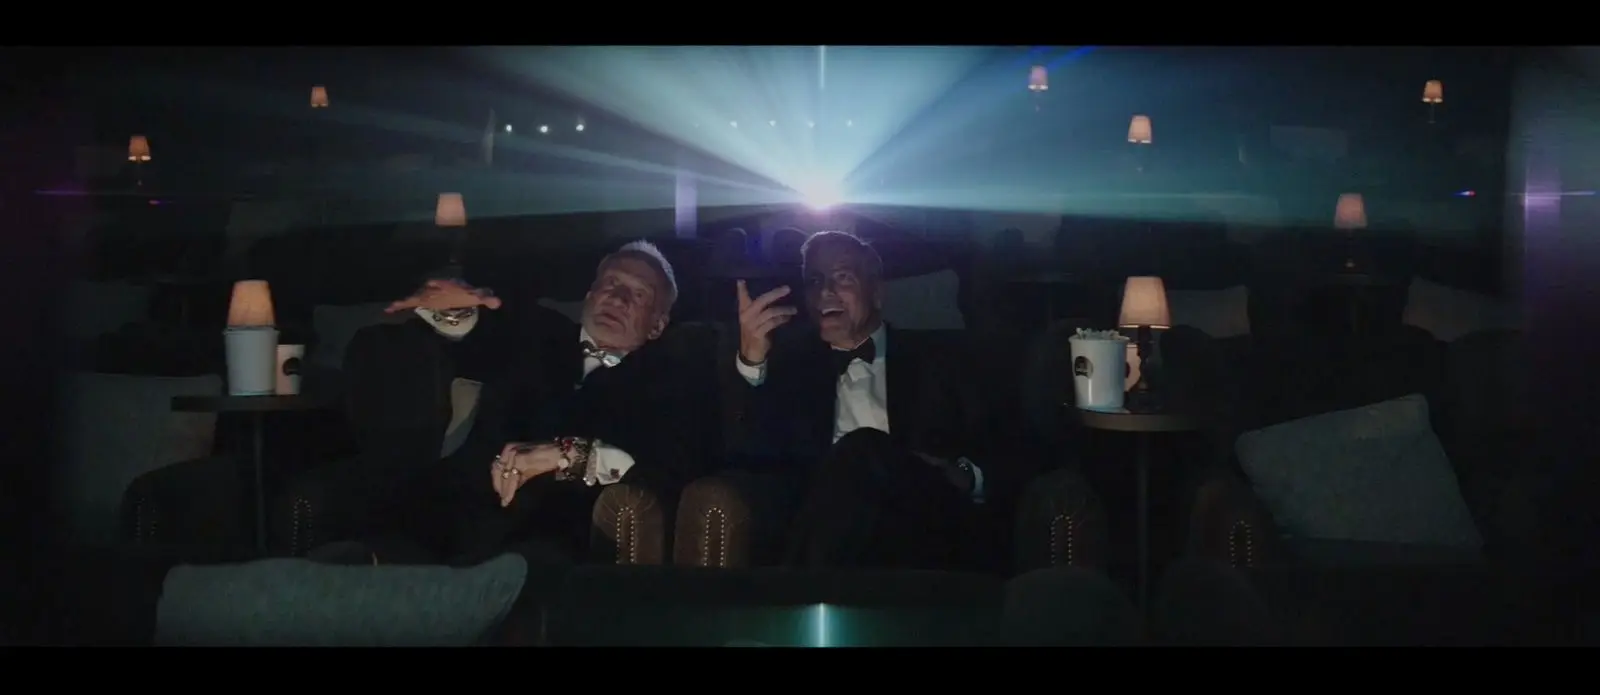 Premiera krótkometrażowego filmu marki OMEGA: „Starmen” z udziałem George’a Clooneya oraz bohatera z jego dzieciństwa - Buzza Aldrina. 